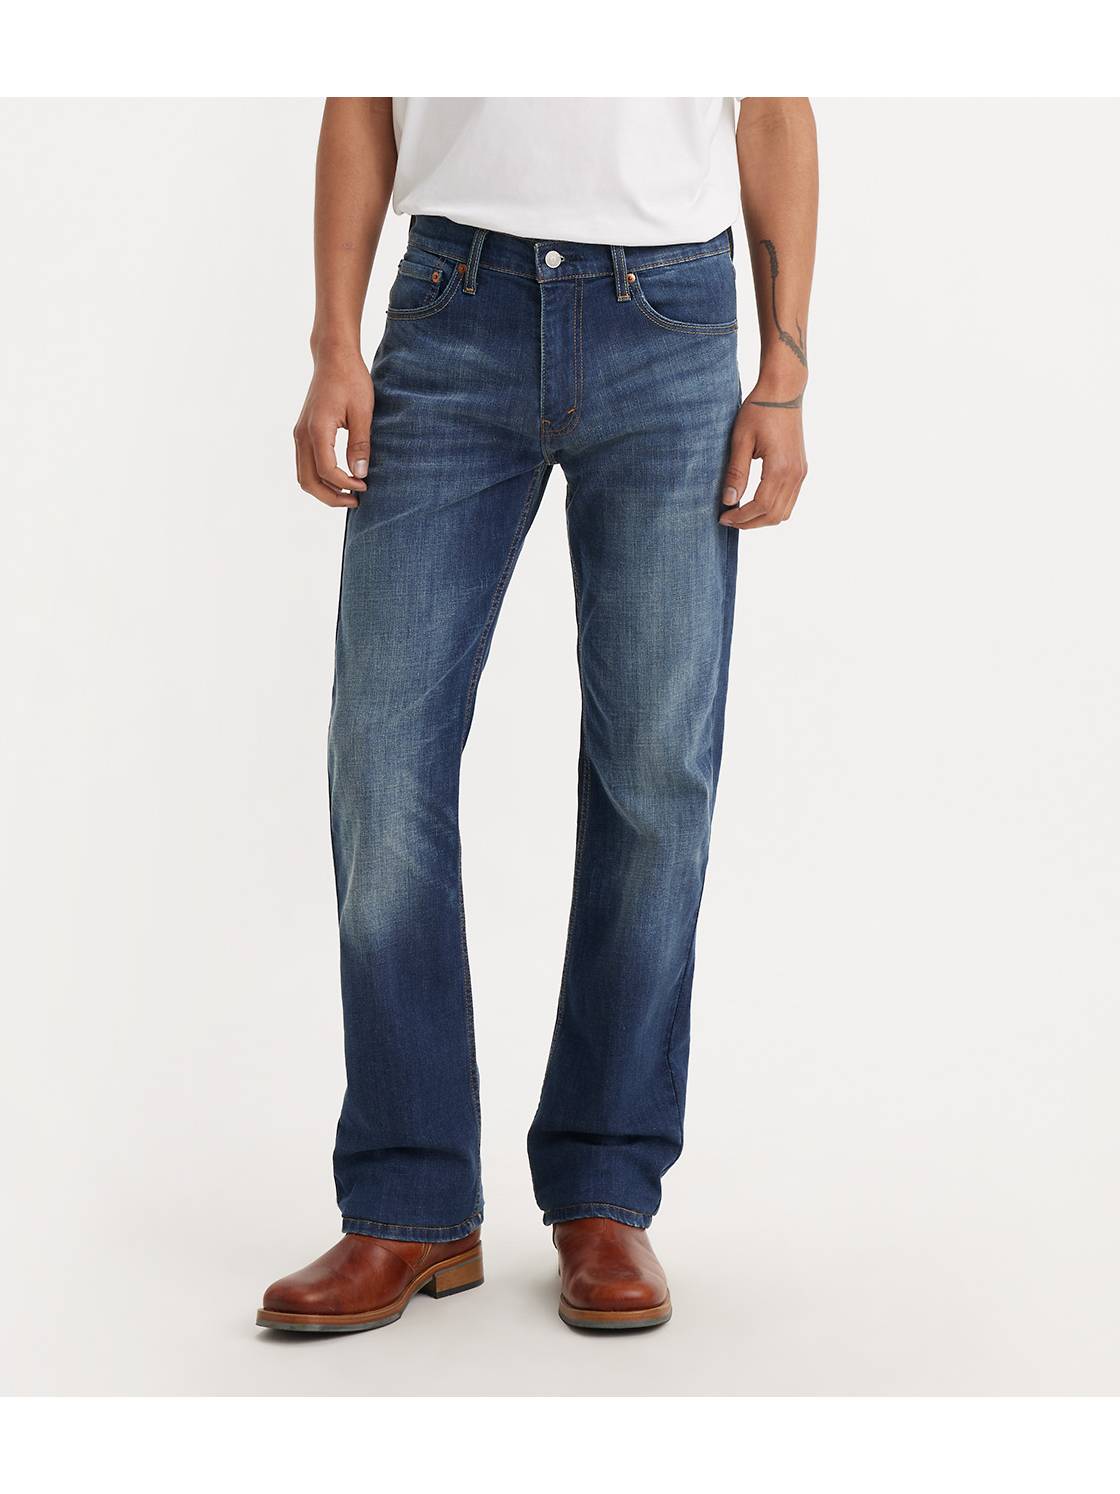 Men's Bootcut Jeans: Shop Bootcut for Men| US